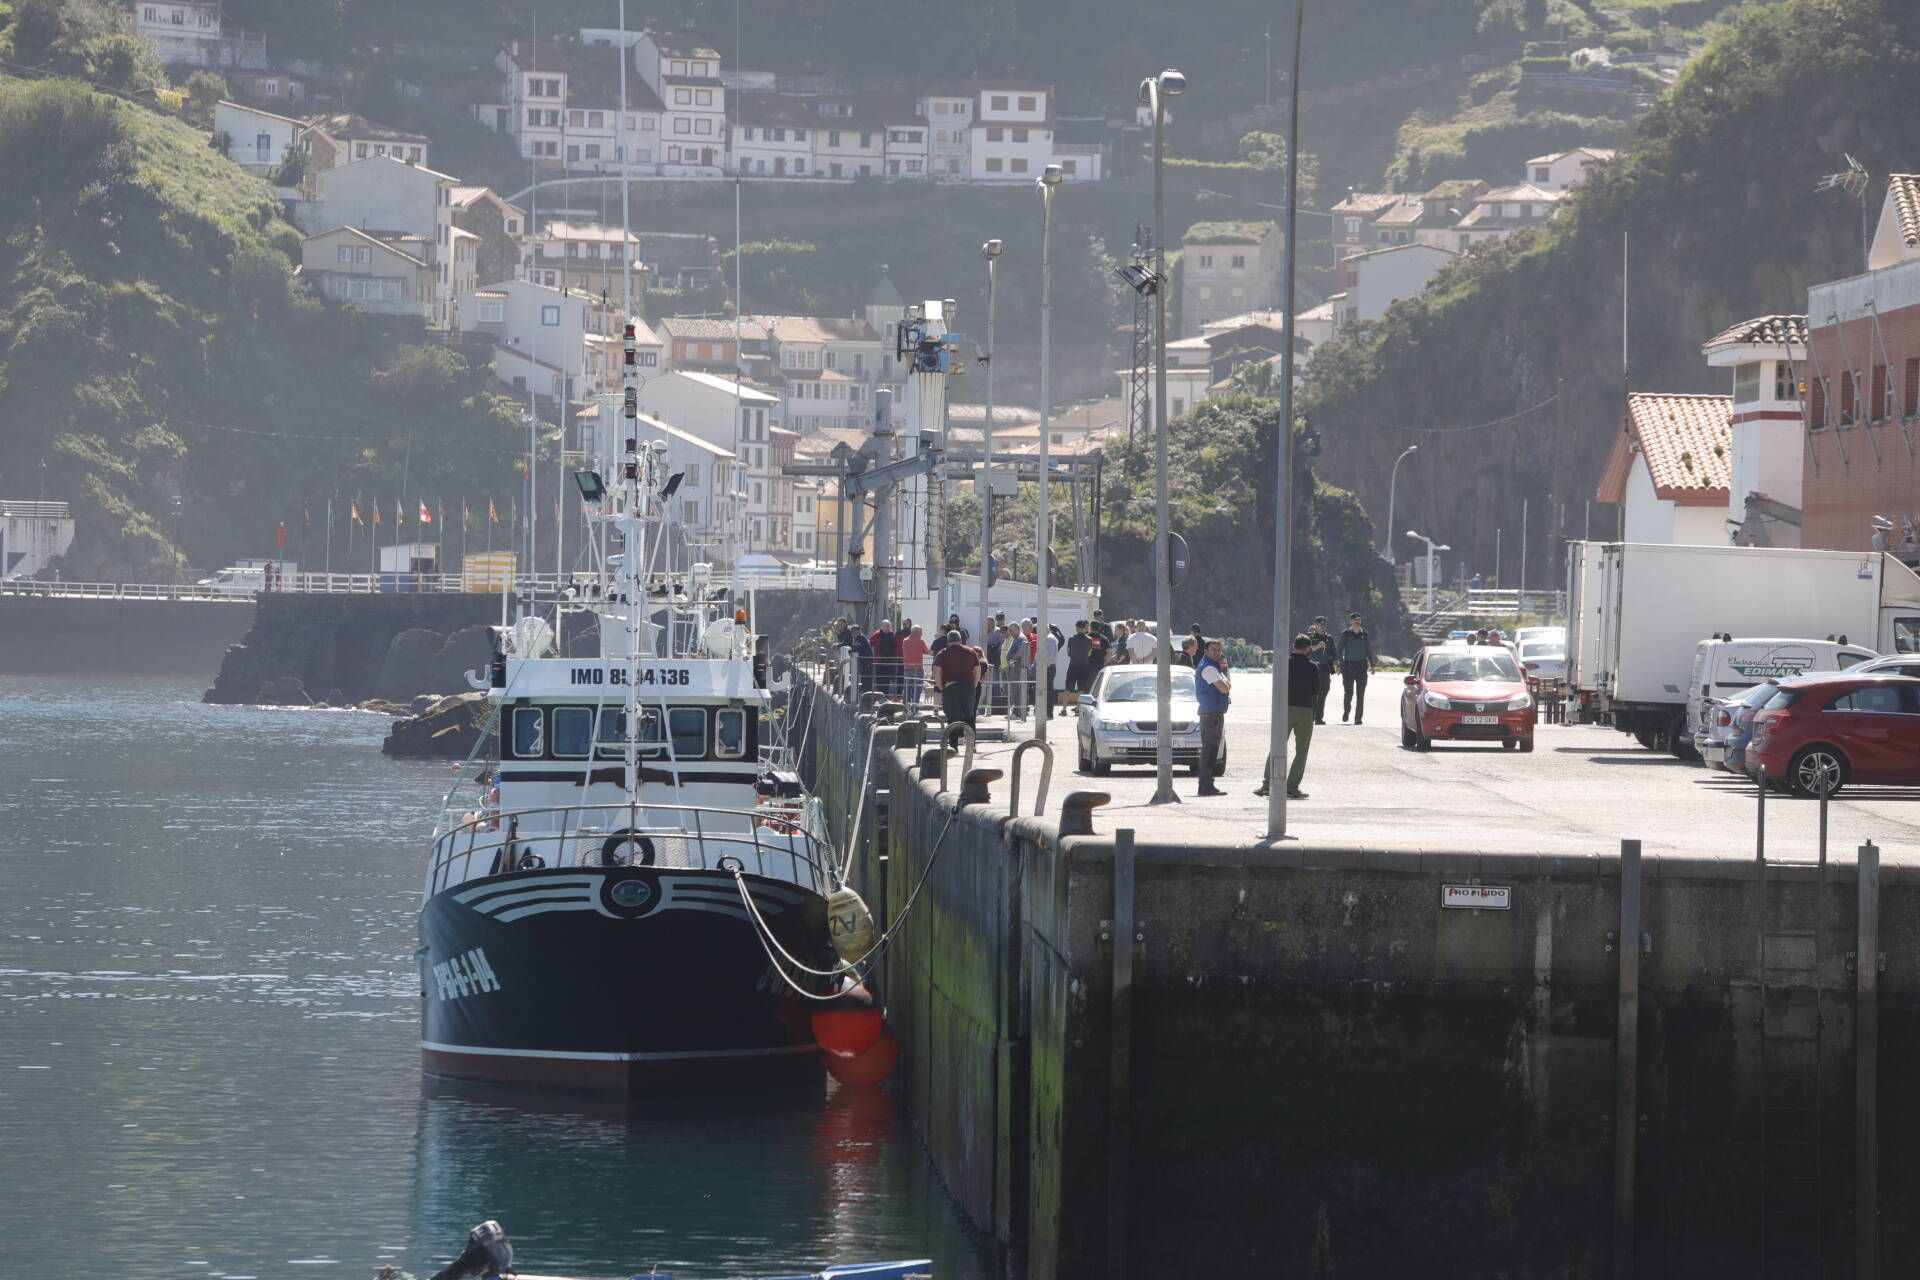 Una embarcación de la Cofradía de Pescadores rescató el cadáver en un pedrero próximo al puerto de la localidad pixueta.